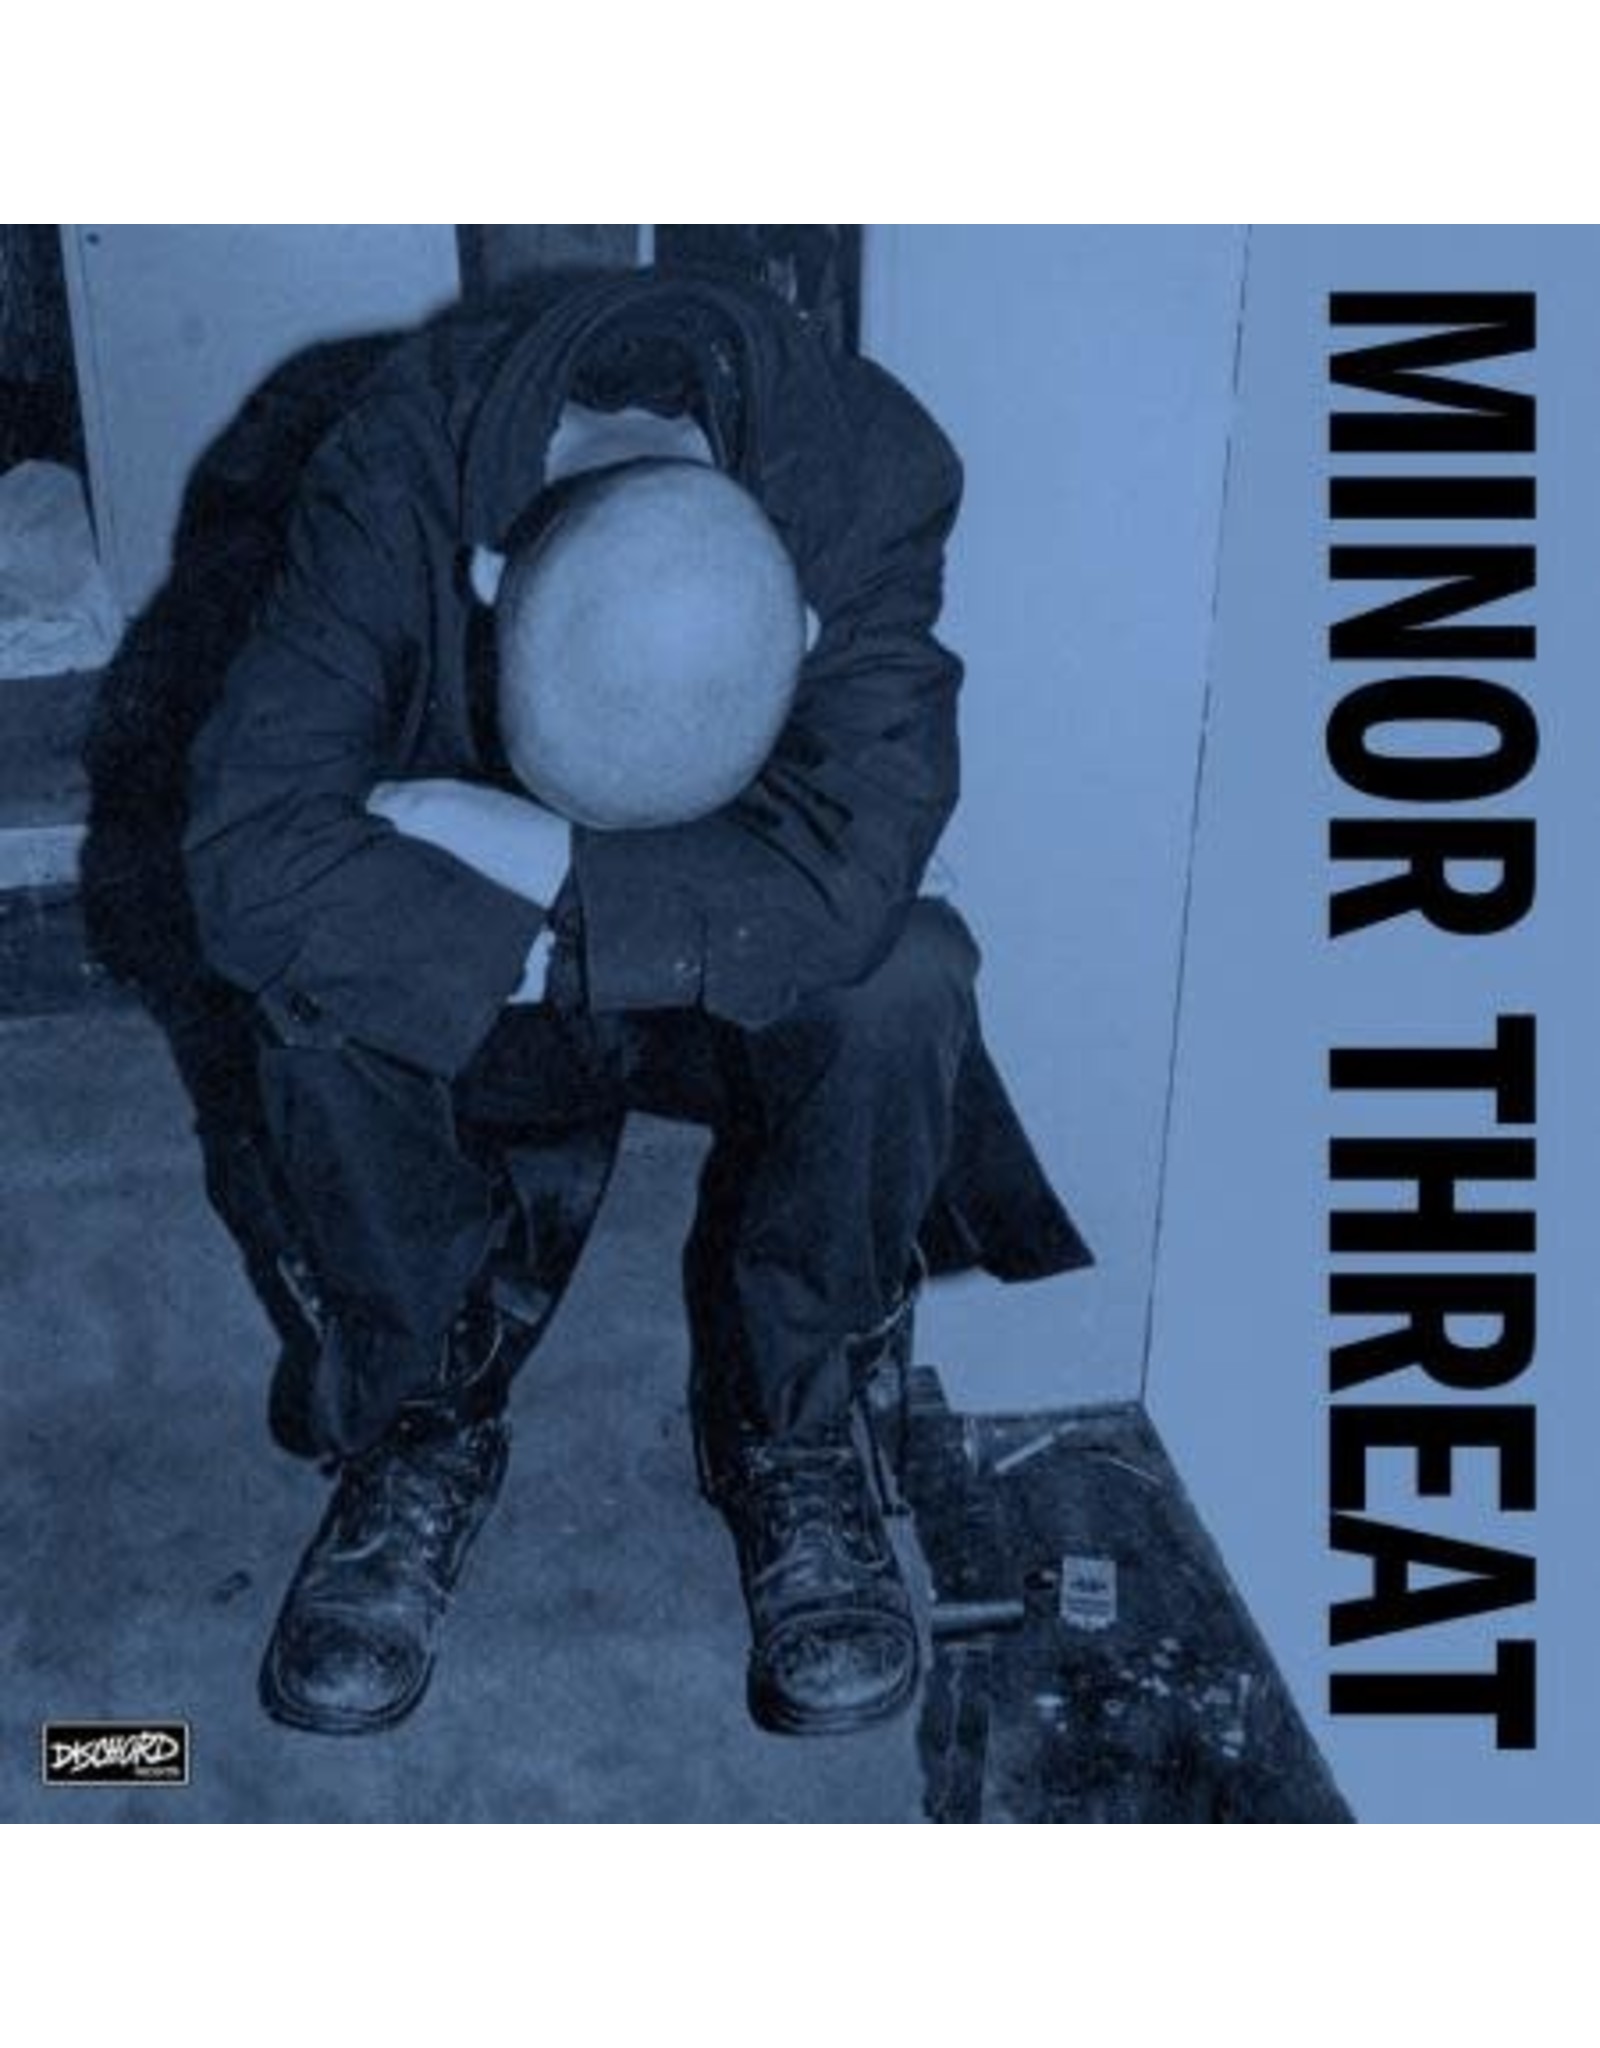 Dischord Minor Threat: Minor Threat LP